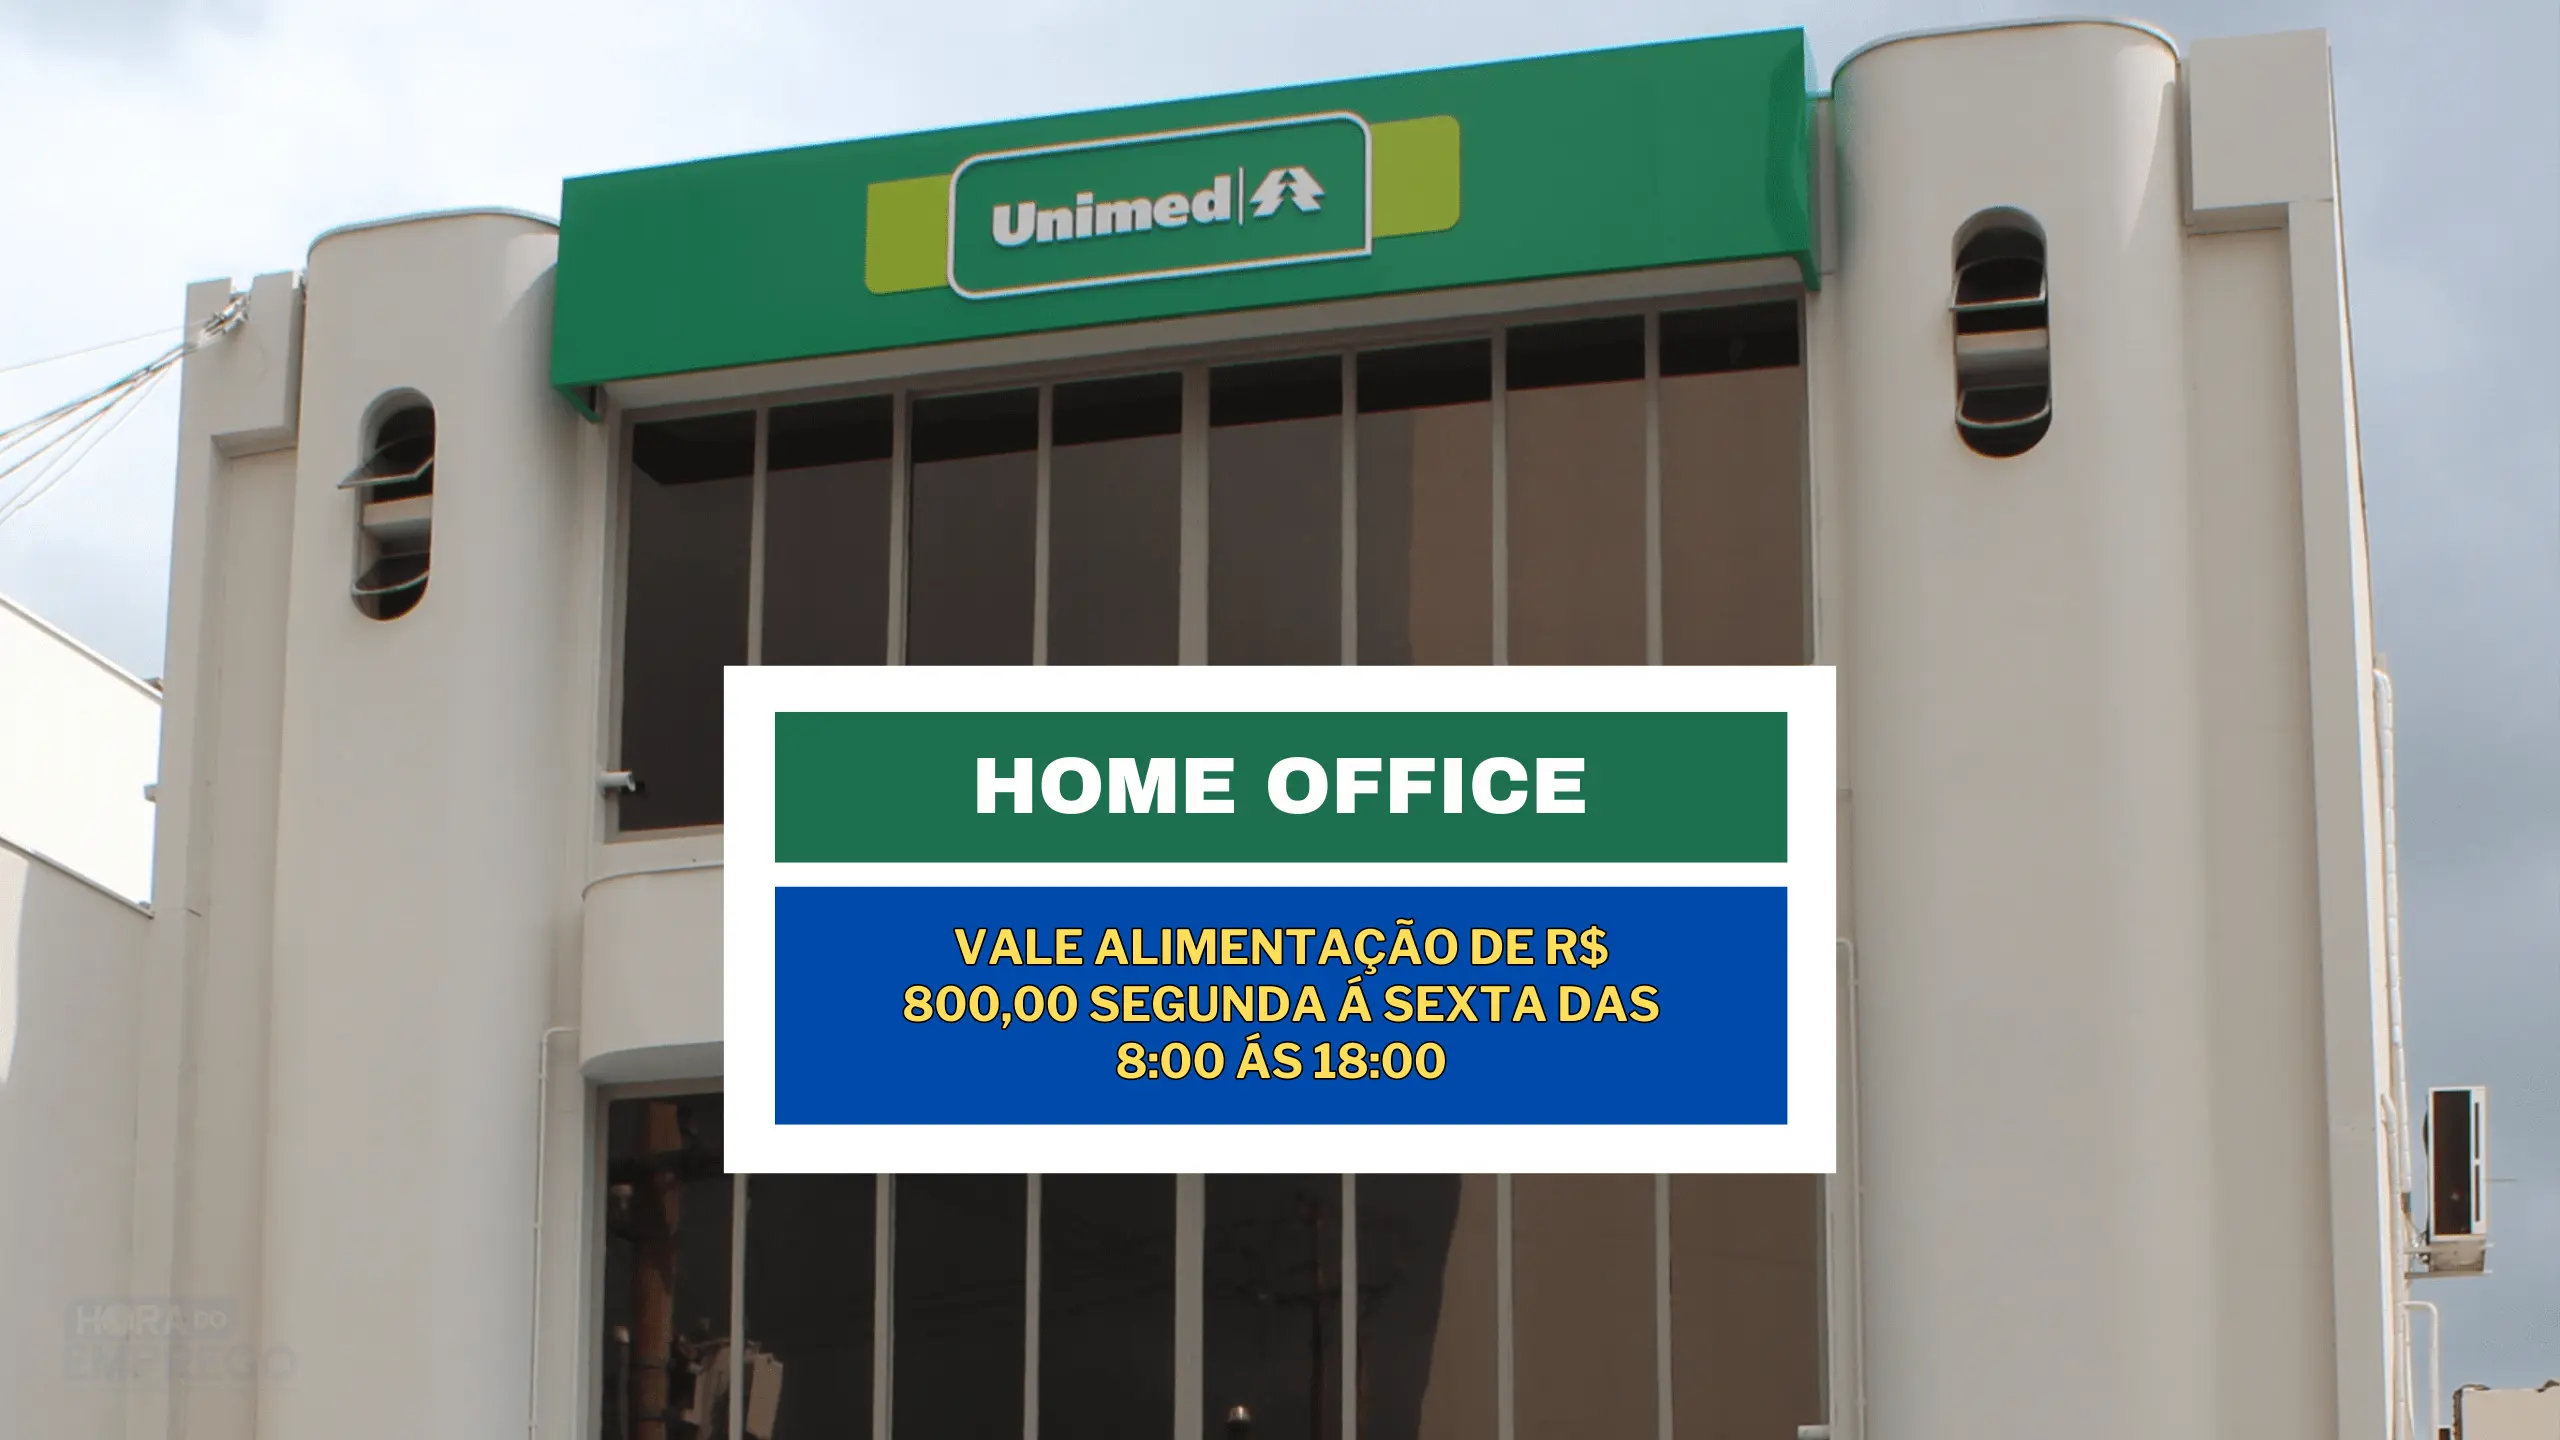 SEM EXPERIÊNCIA! Unimed abre vaga HOME OFFICE com Vale Alimentação de R$ 800,00 segunda á sexta das 8:00 ás 18:00 para Cientista de Dados